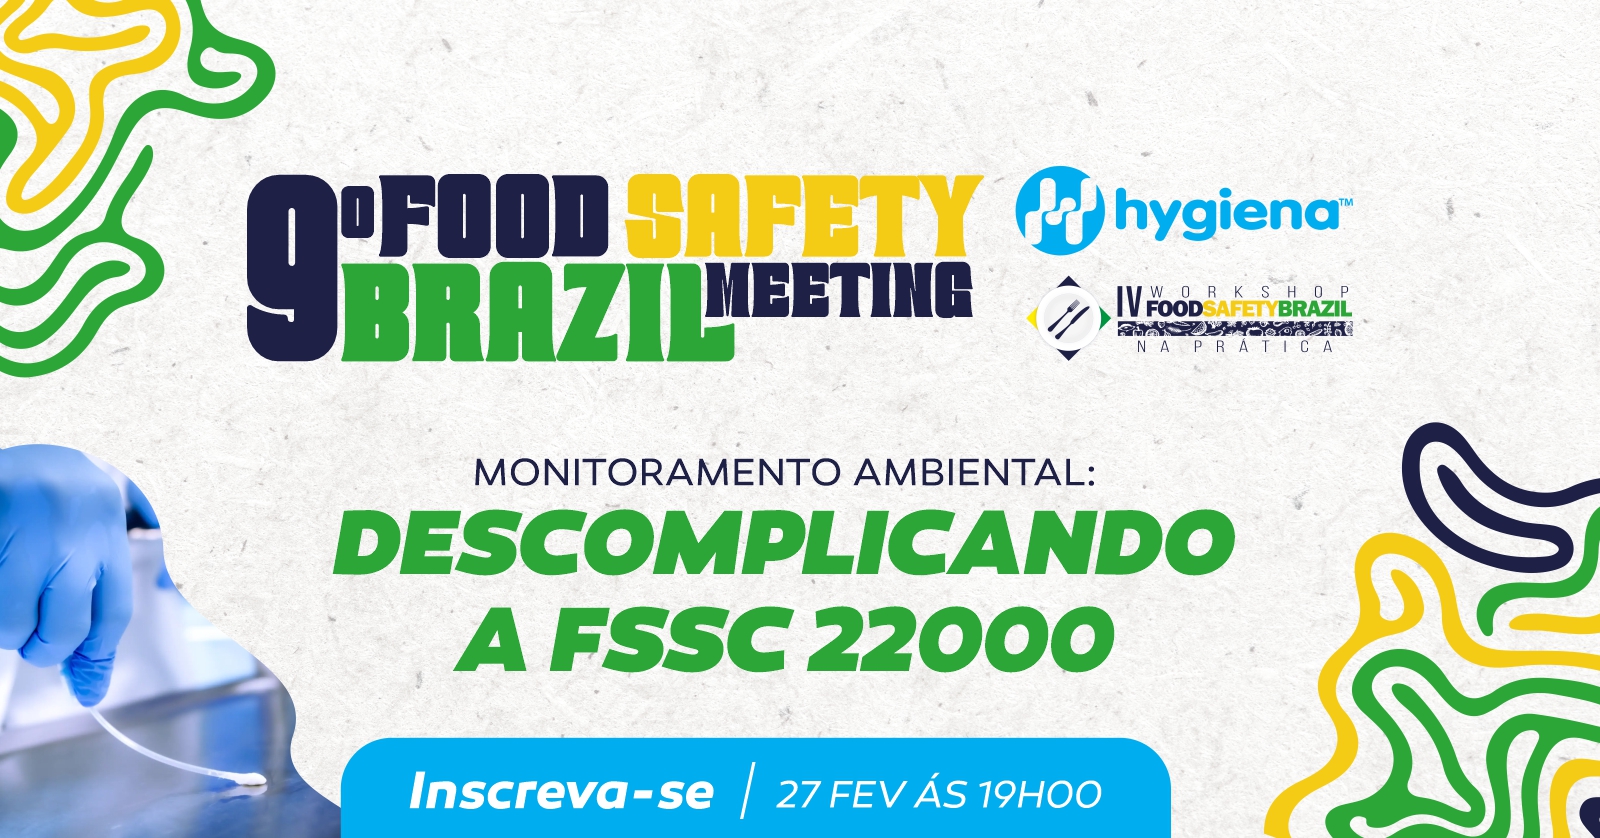 Já entrou em vigor a nova legislação de Segurança de Alimentos no Canadá  (SFCR)- Parte II - Food Safety Brazil